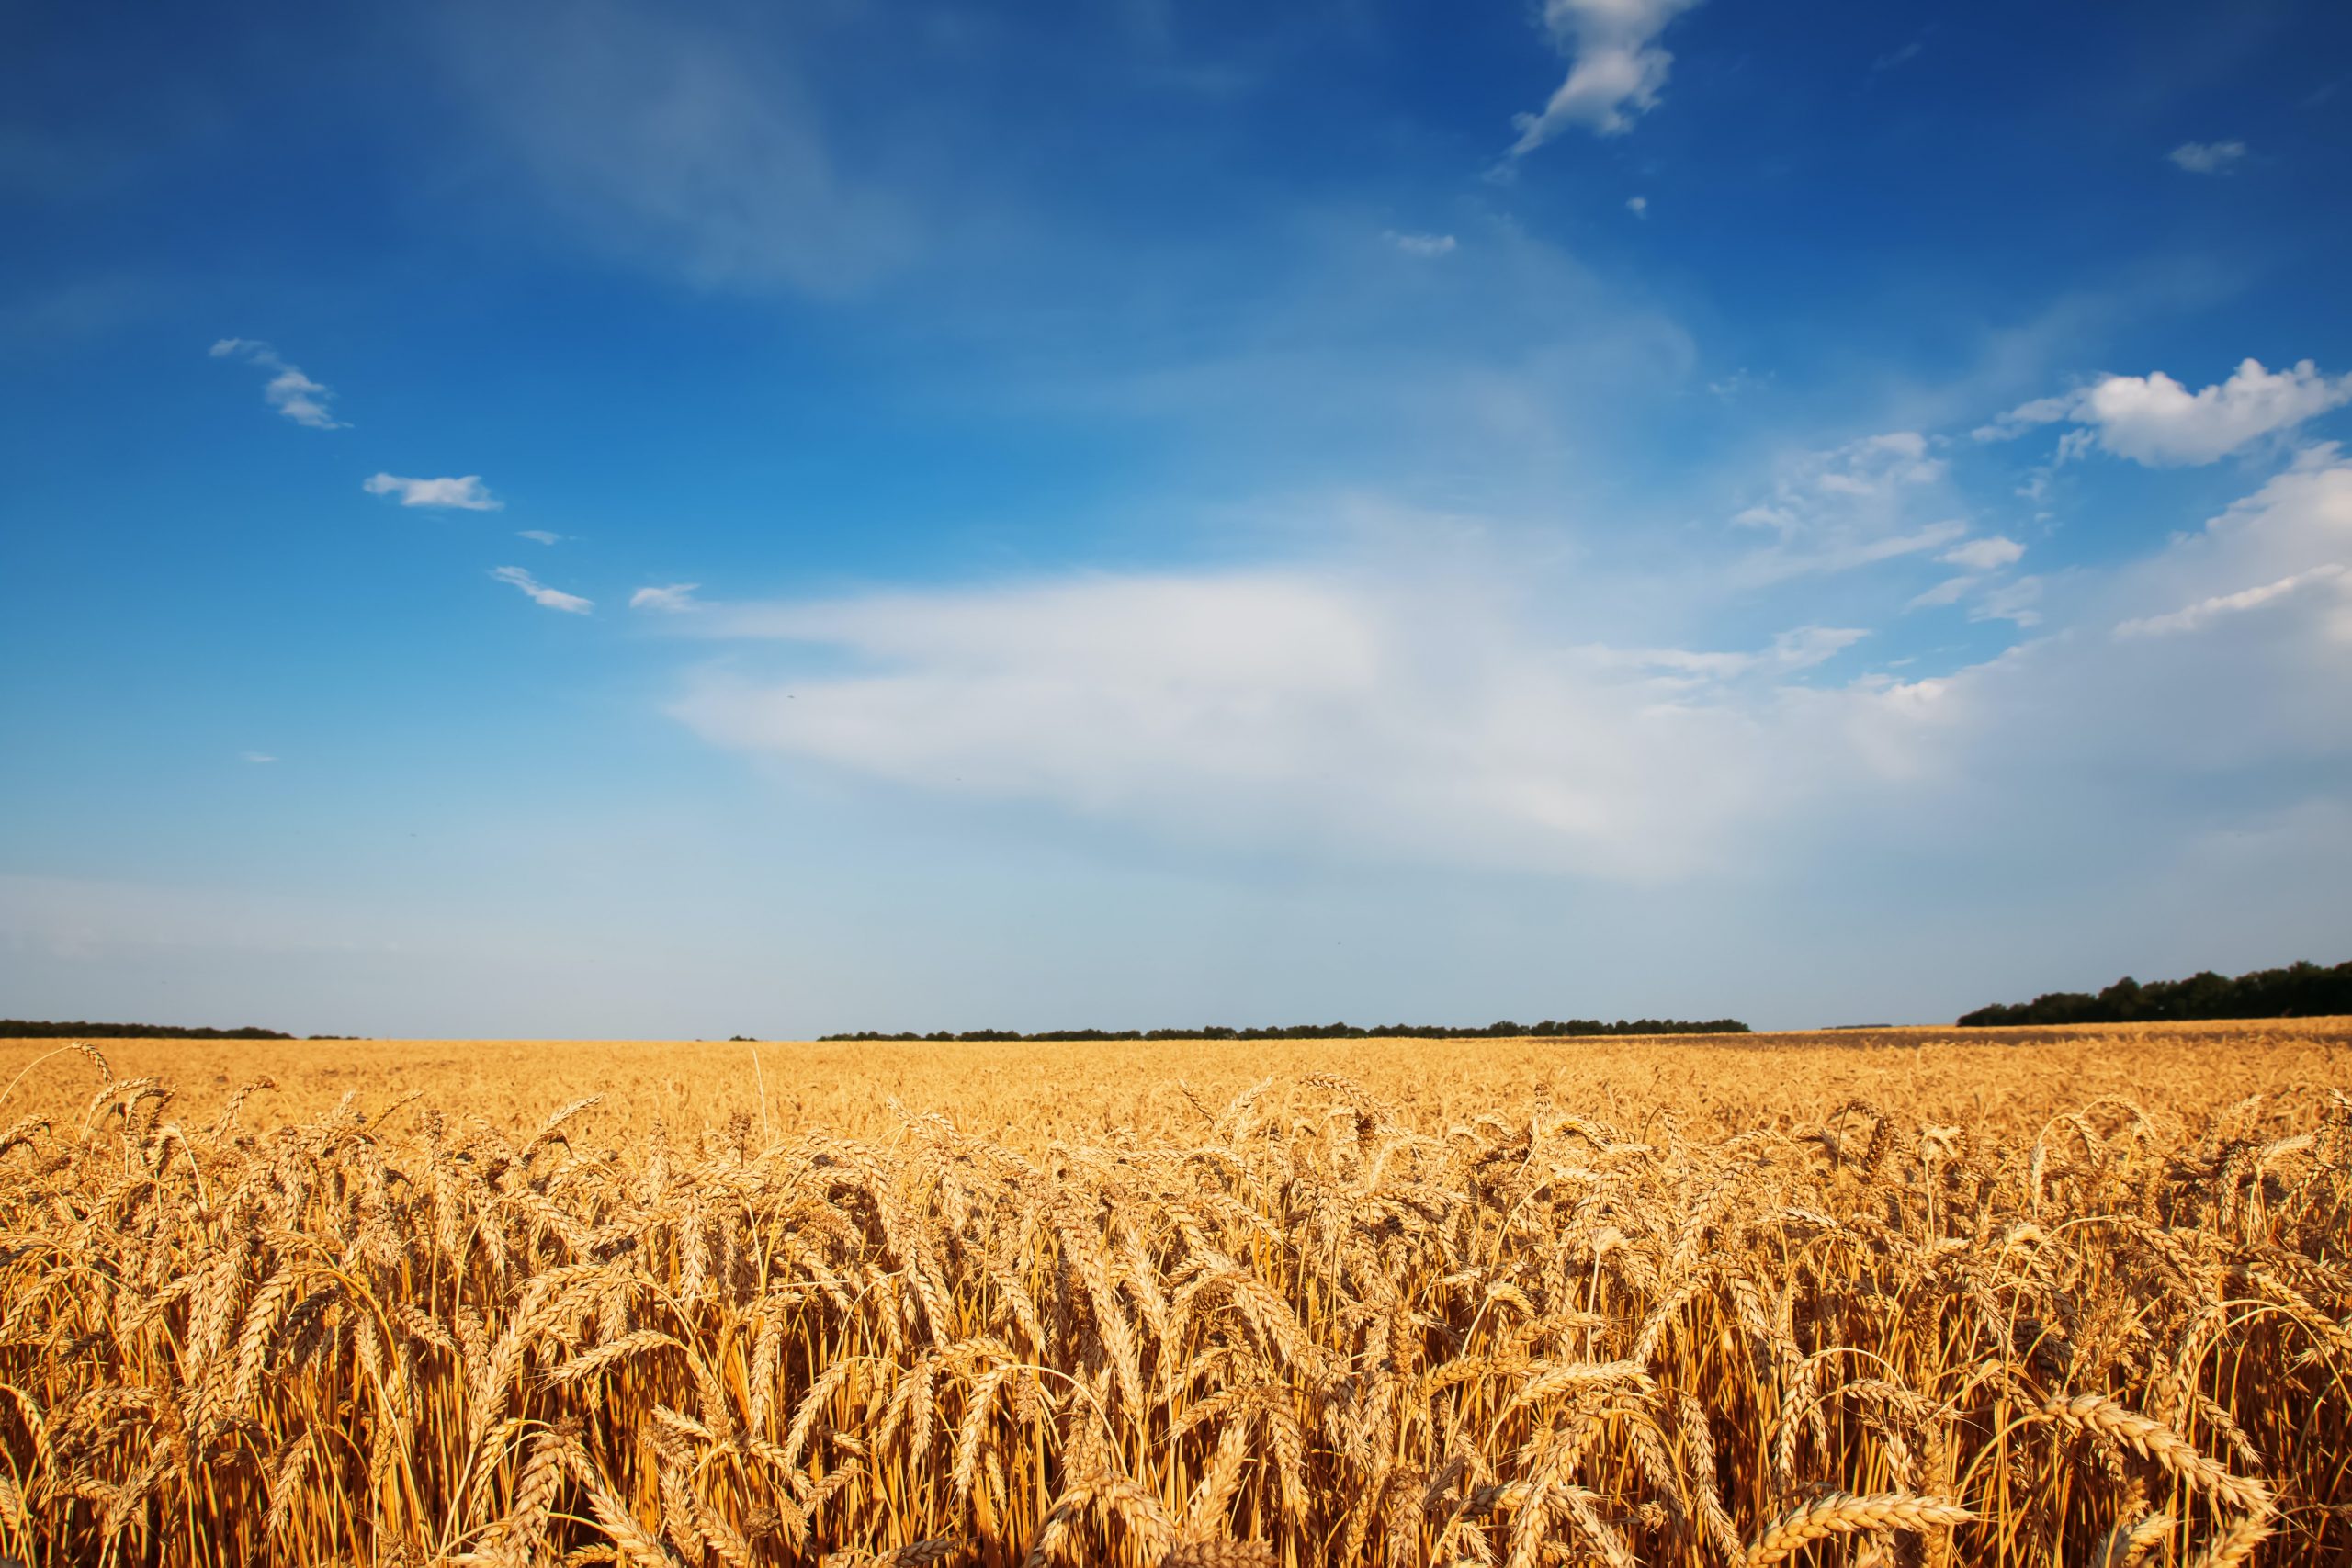 Ukrán gabona: több kontrollt és több pénzt ígérnek a gazdáknak, de mire lesz elég?